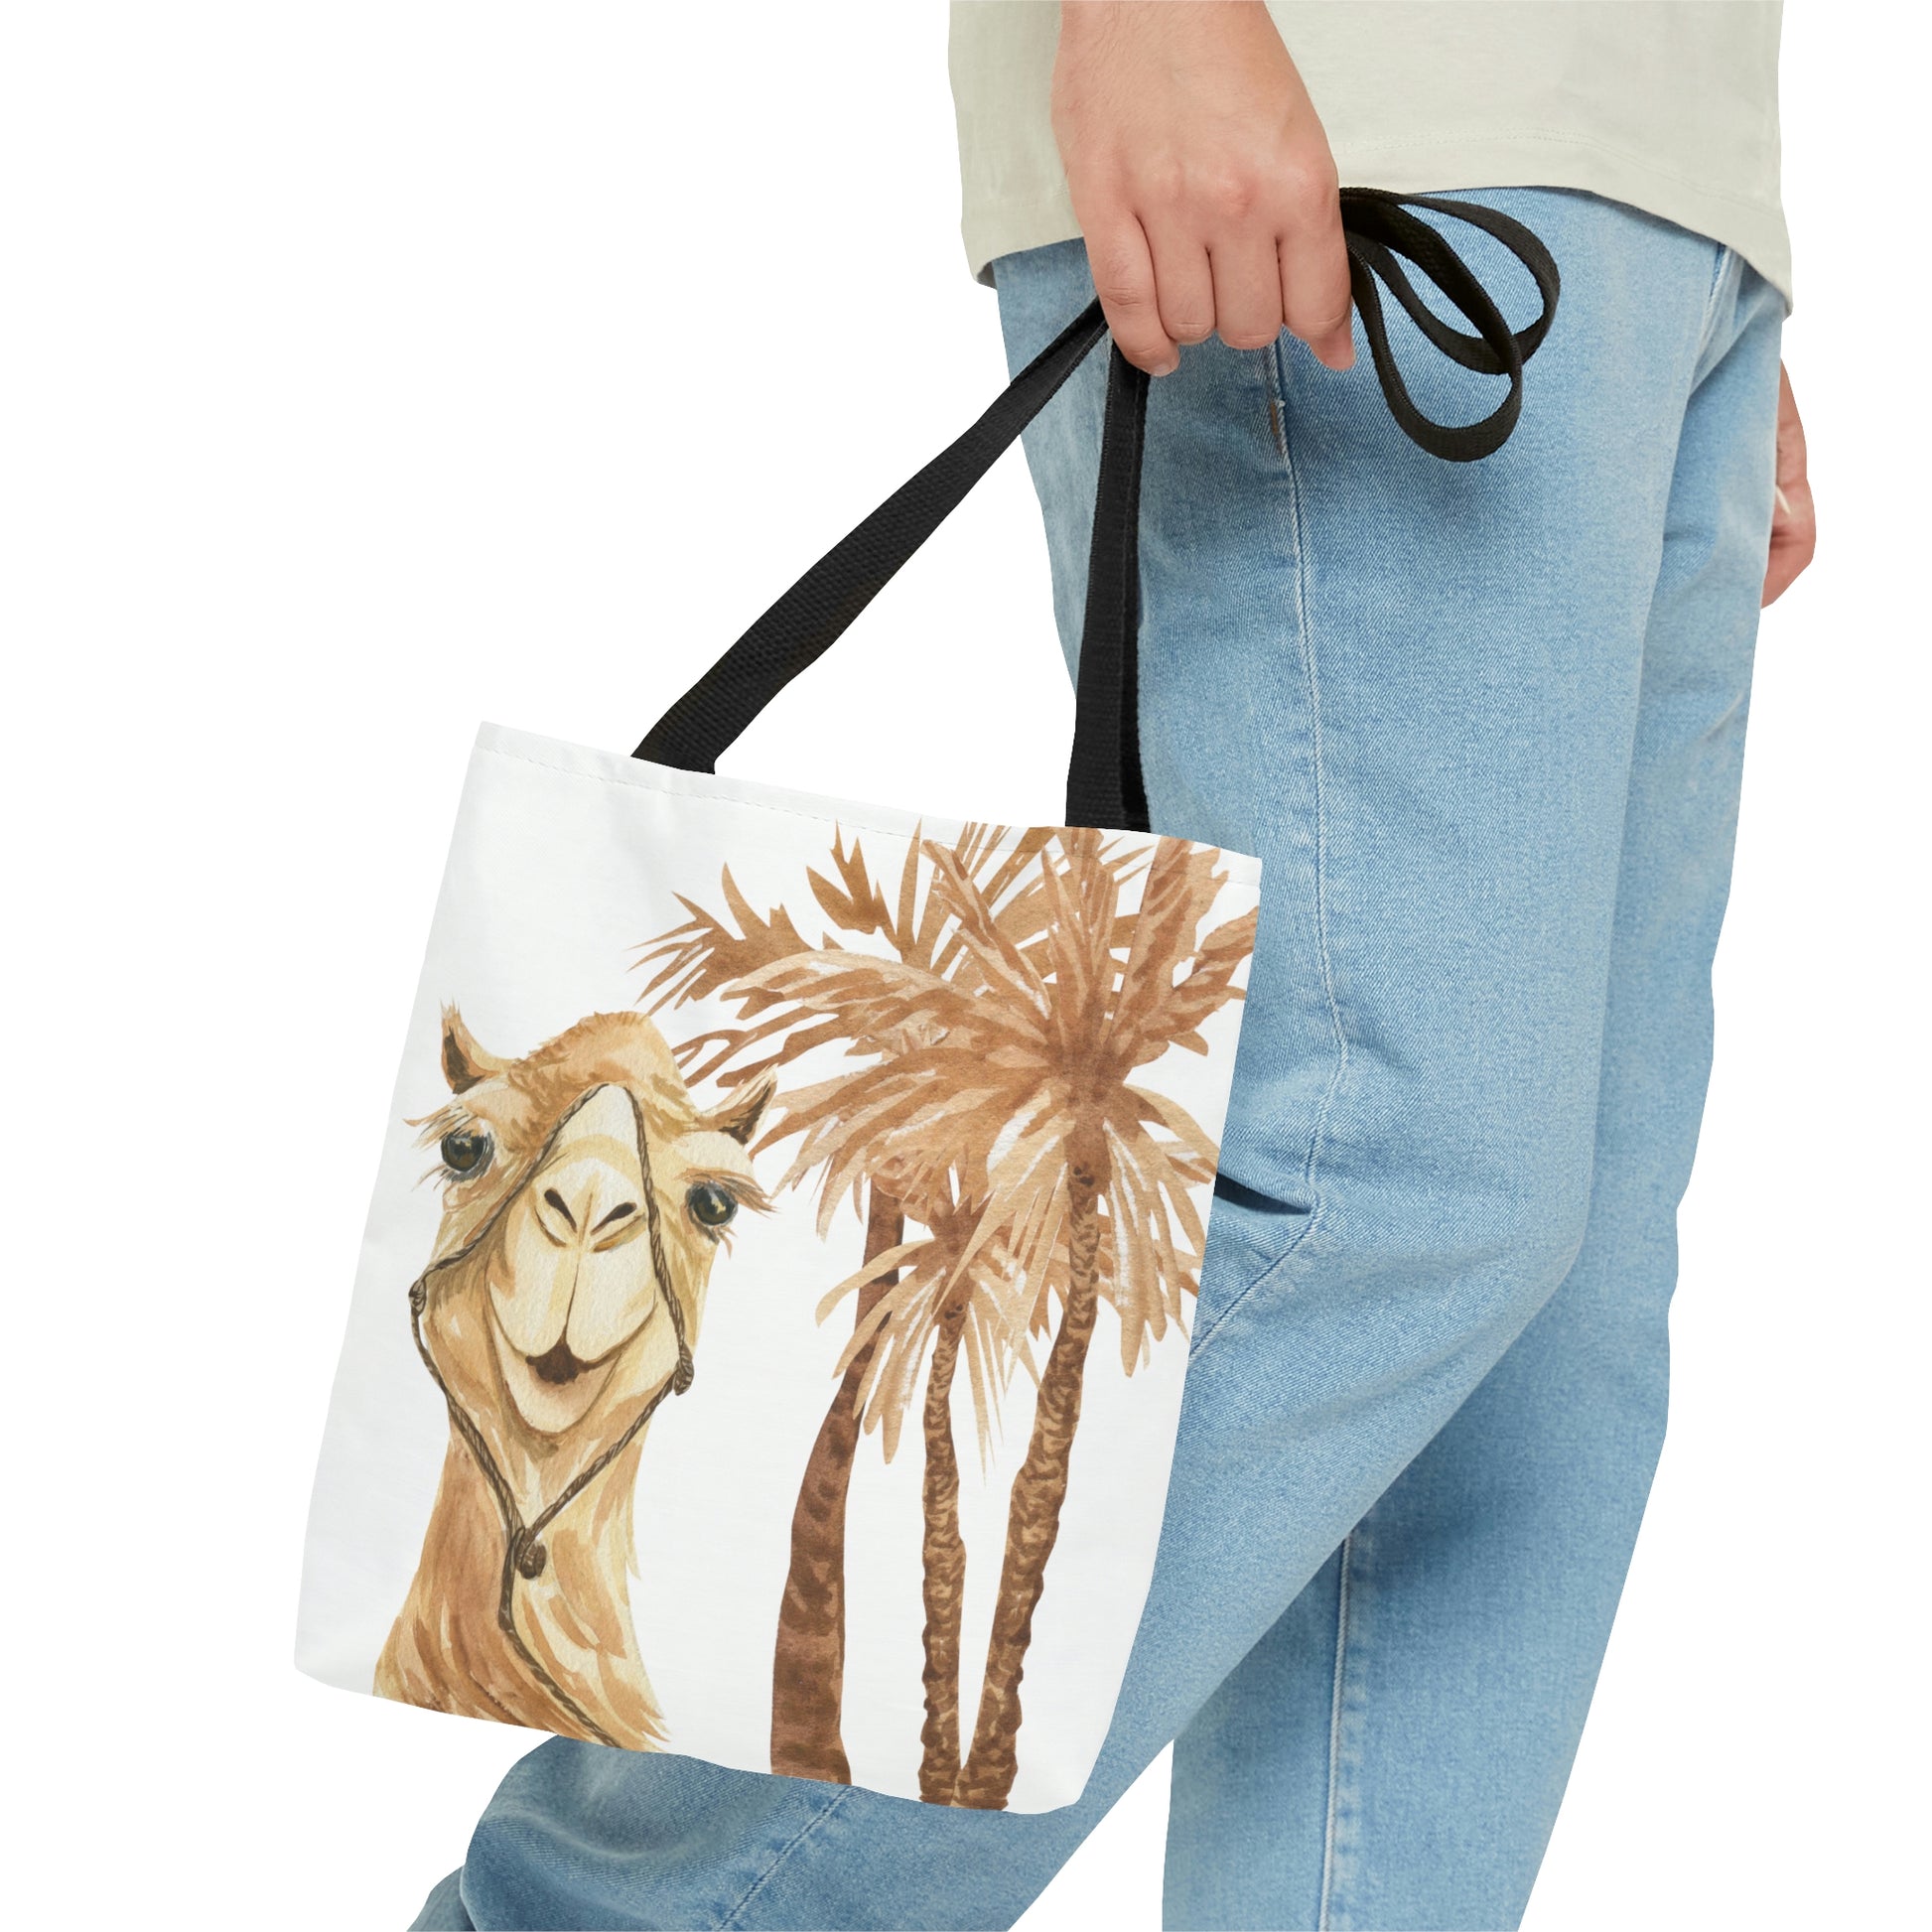 Moroccan Desert Camel Tote Bag